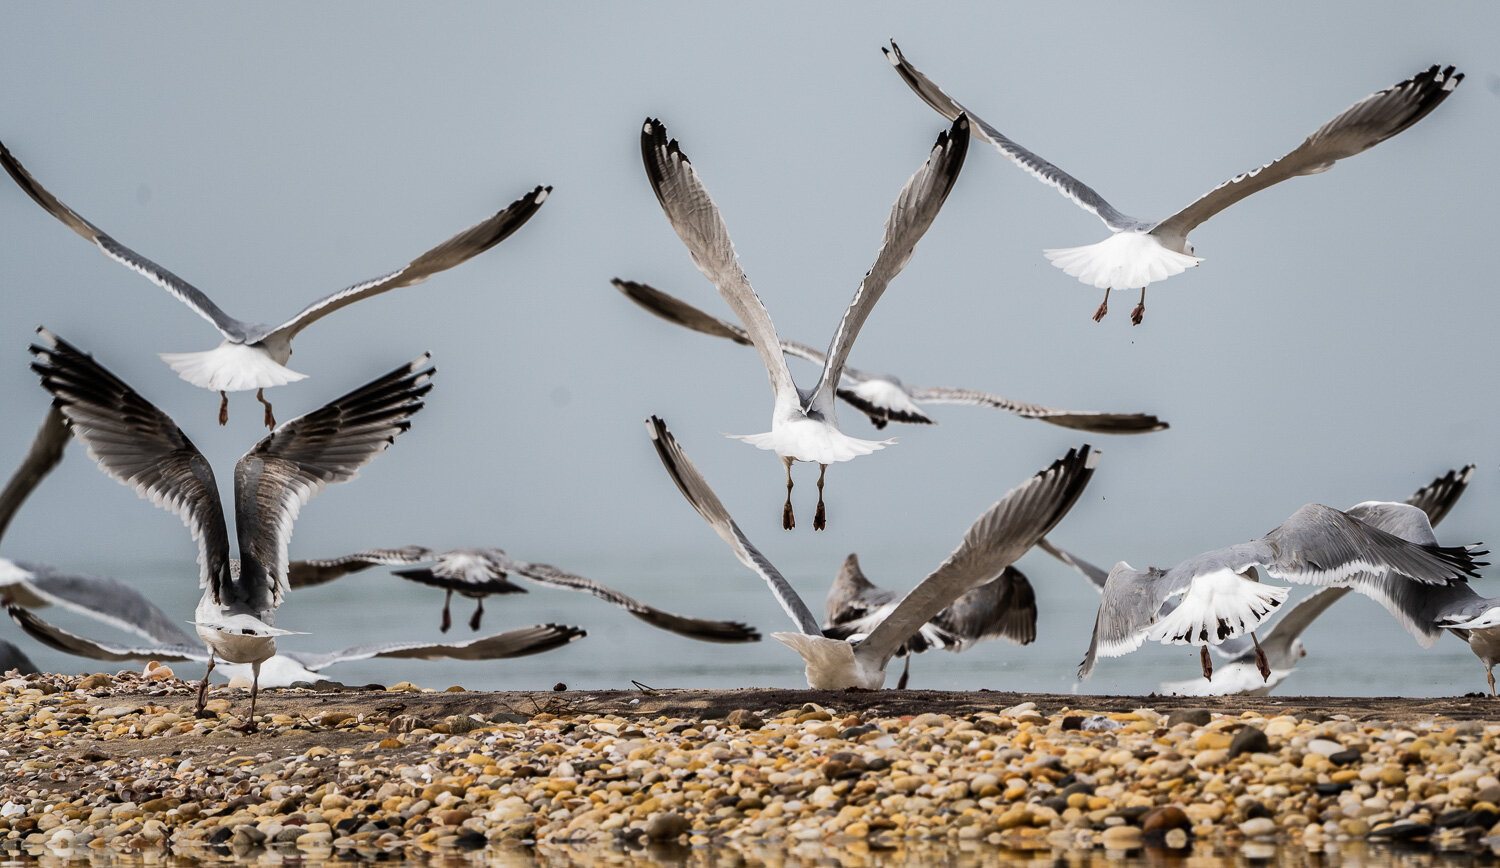 95gulls seagulls bird inlet_DSC1161.jpg